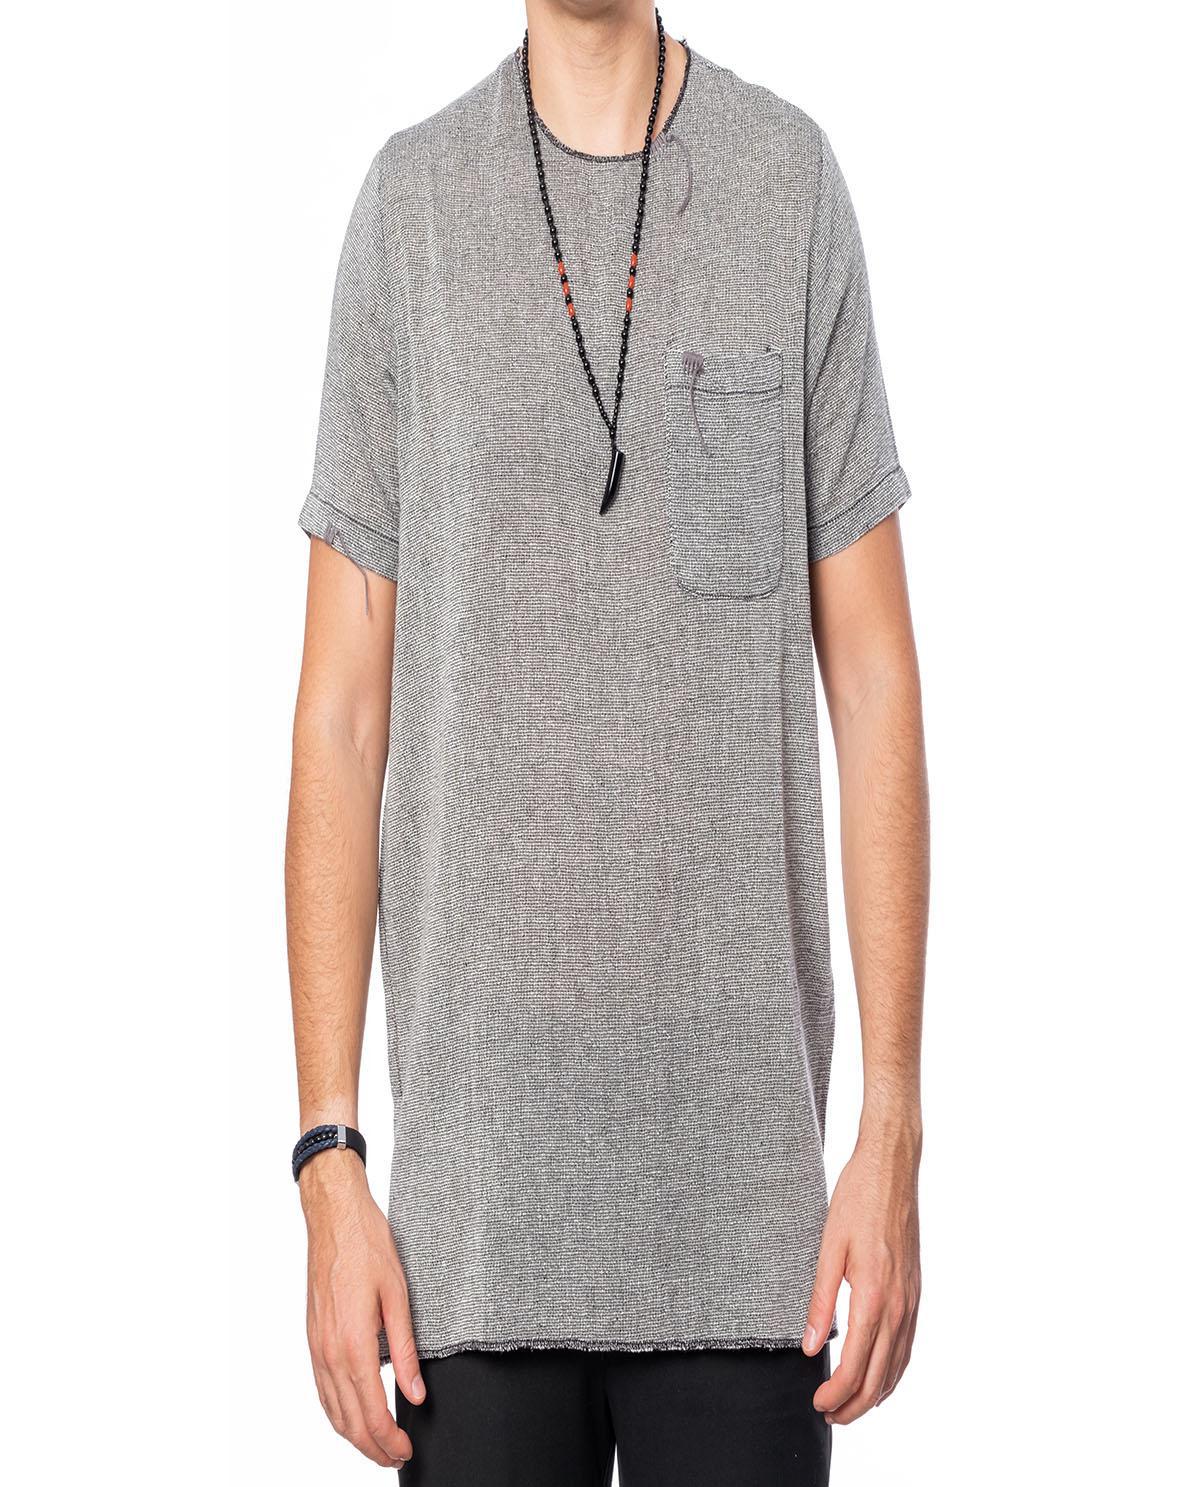 T-shirt manches courtes gris foncé avec poche en lin